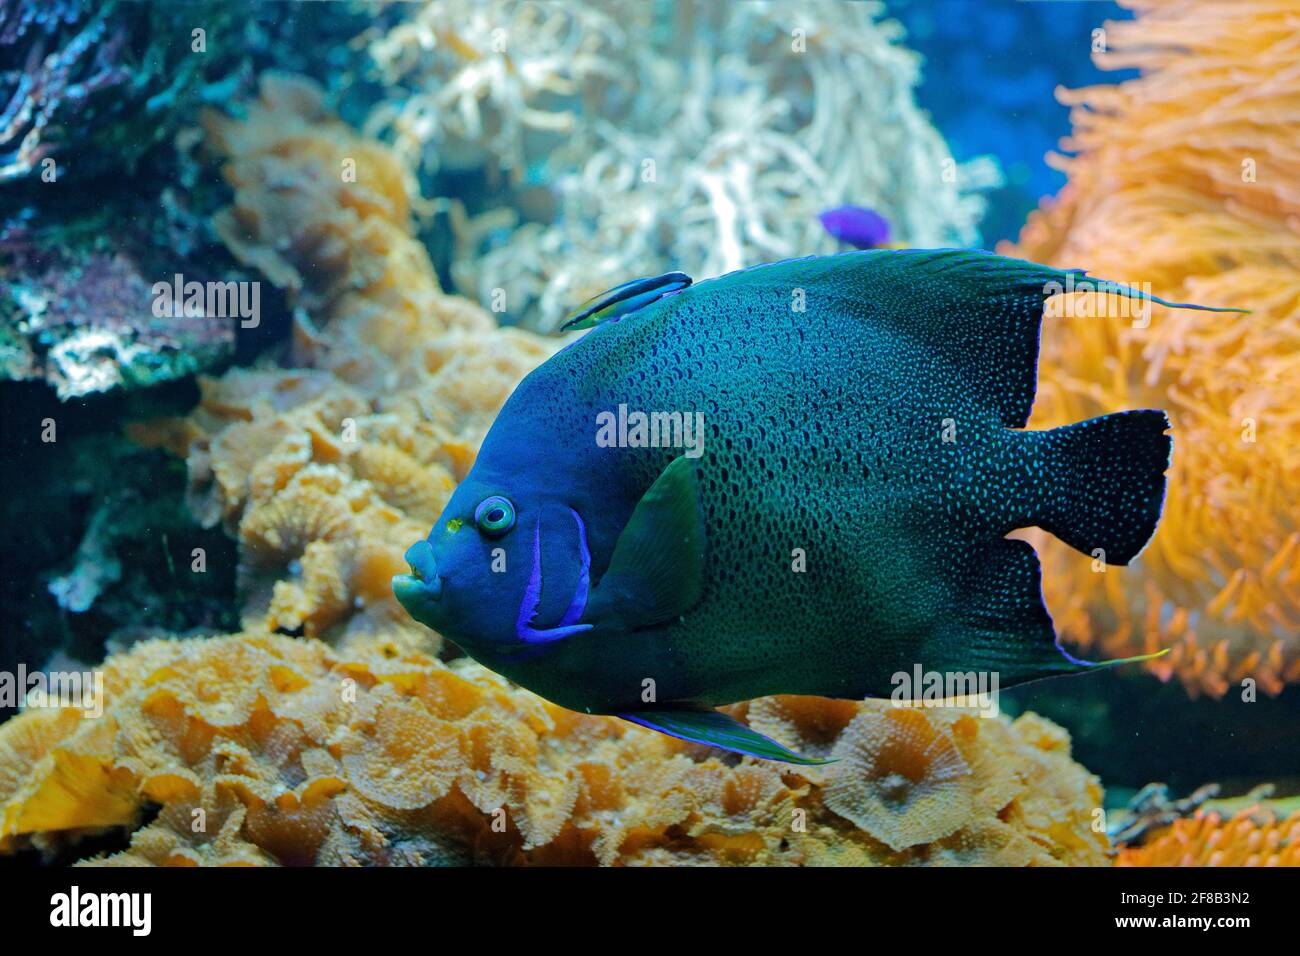 Pomacanthus semicreculatus, Coran Angelfish, habitat de l'eau de la nature. Eau bleue avec de beaux poissons bleu jaune. Animal dans l'eau de mer. Krea, océan Indien Banque D'Images